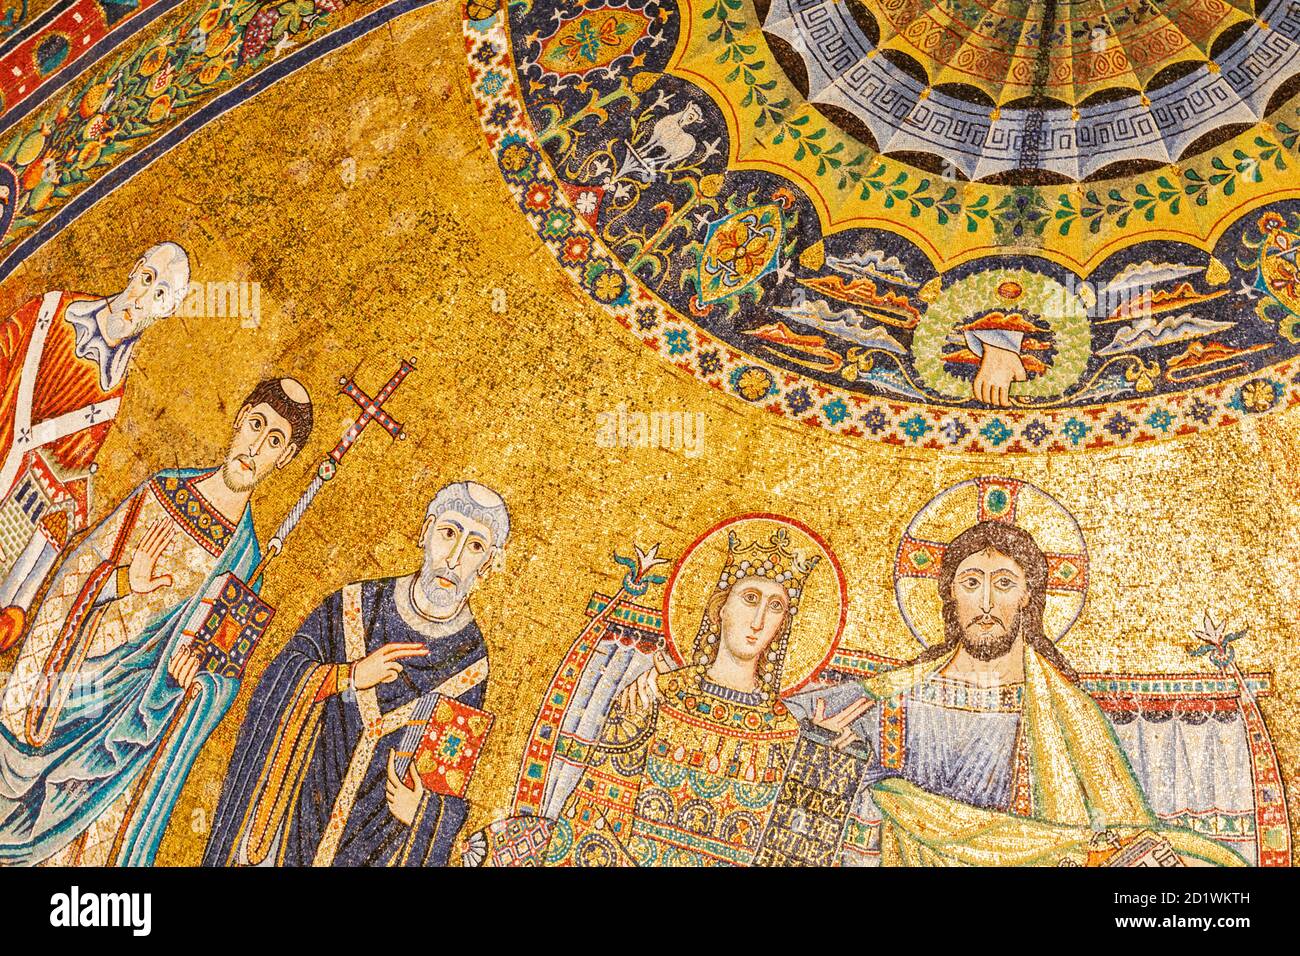 Inneneinrichtung des Mosaiks der Apsis aus dem 12. Jahrhundert in der Kirche Santa Maria, Trastevere, Rom, Italien. Stockfoto